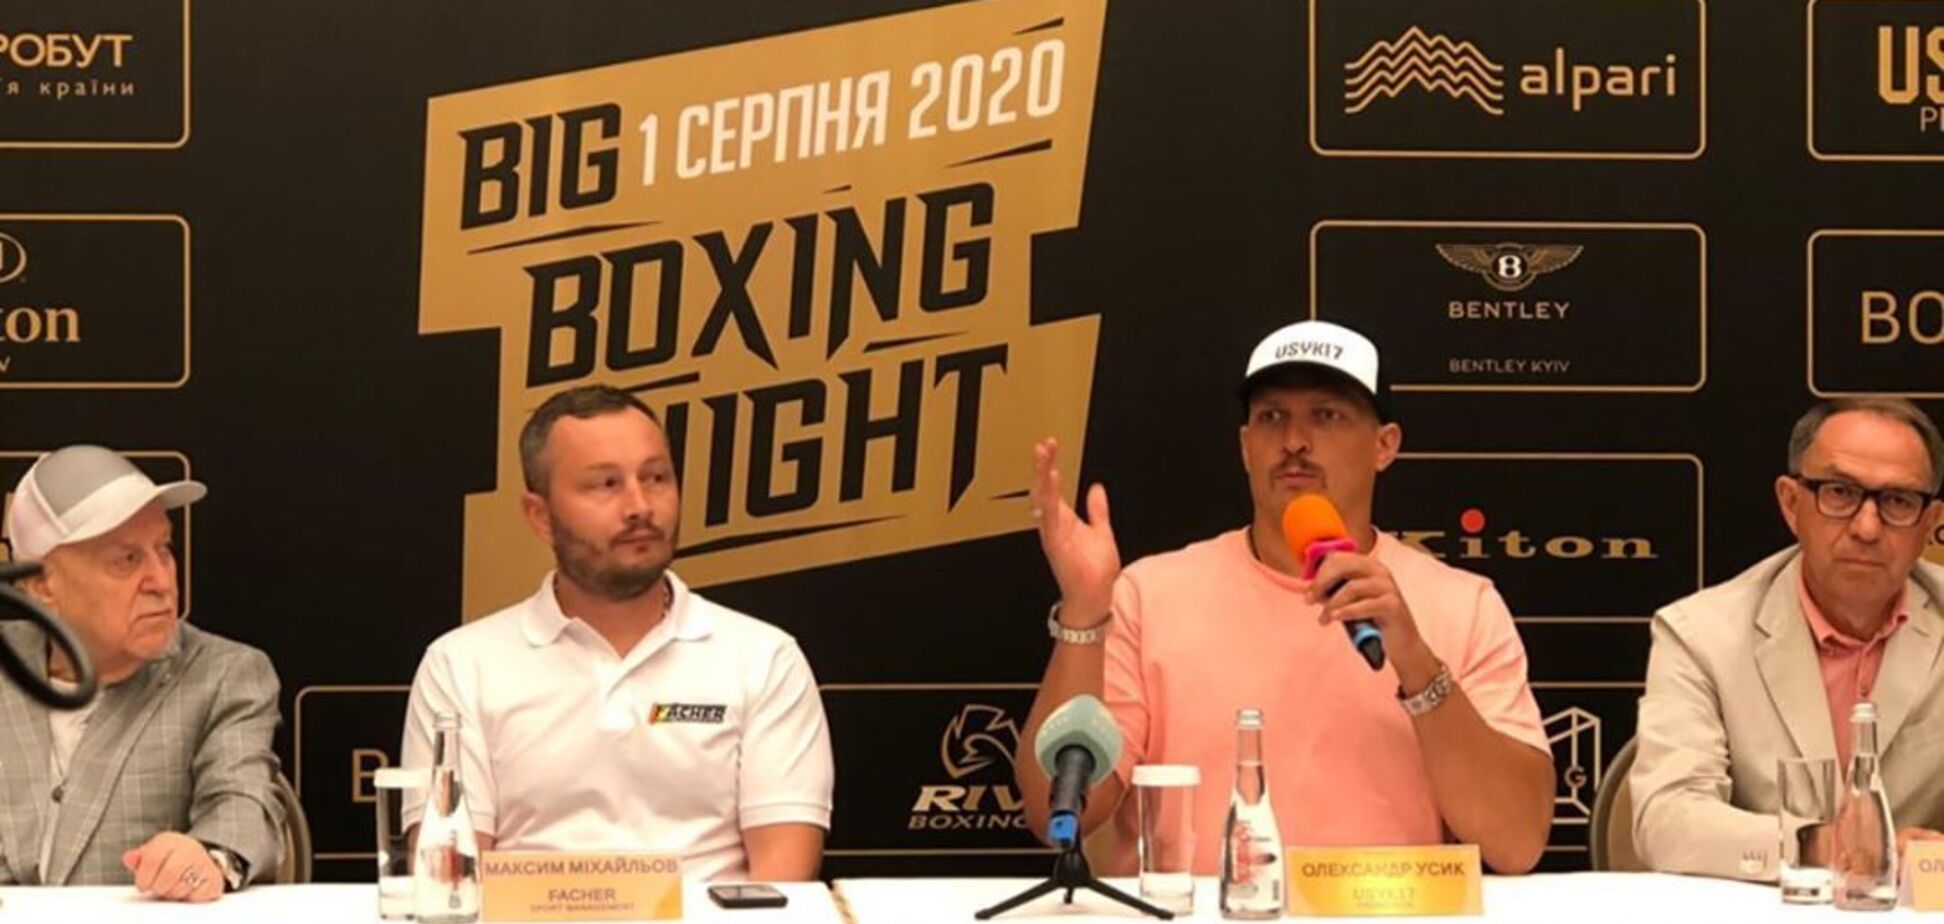 Бокс від Усика: де дивитися онлайн перше шоу в Києві Big Boxing Night